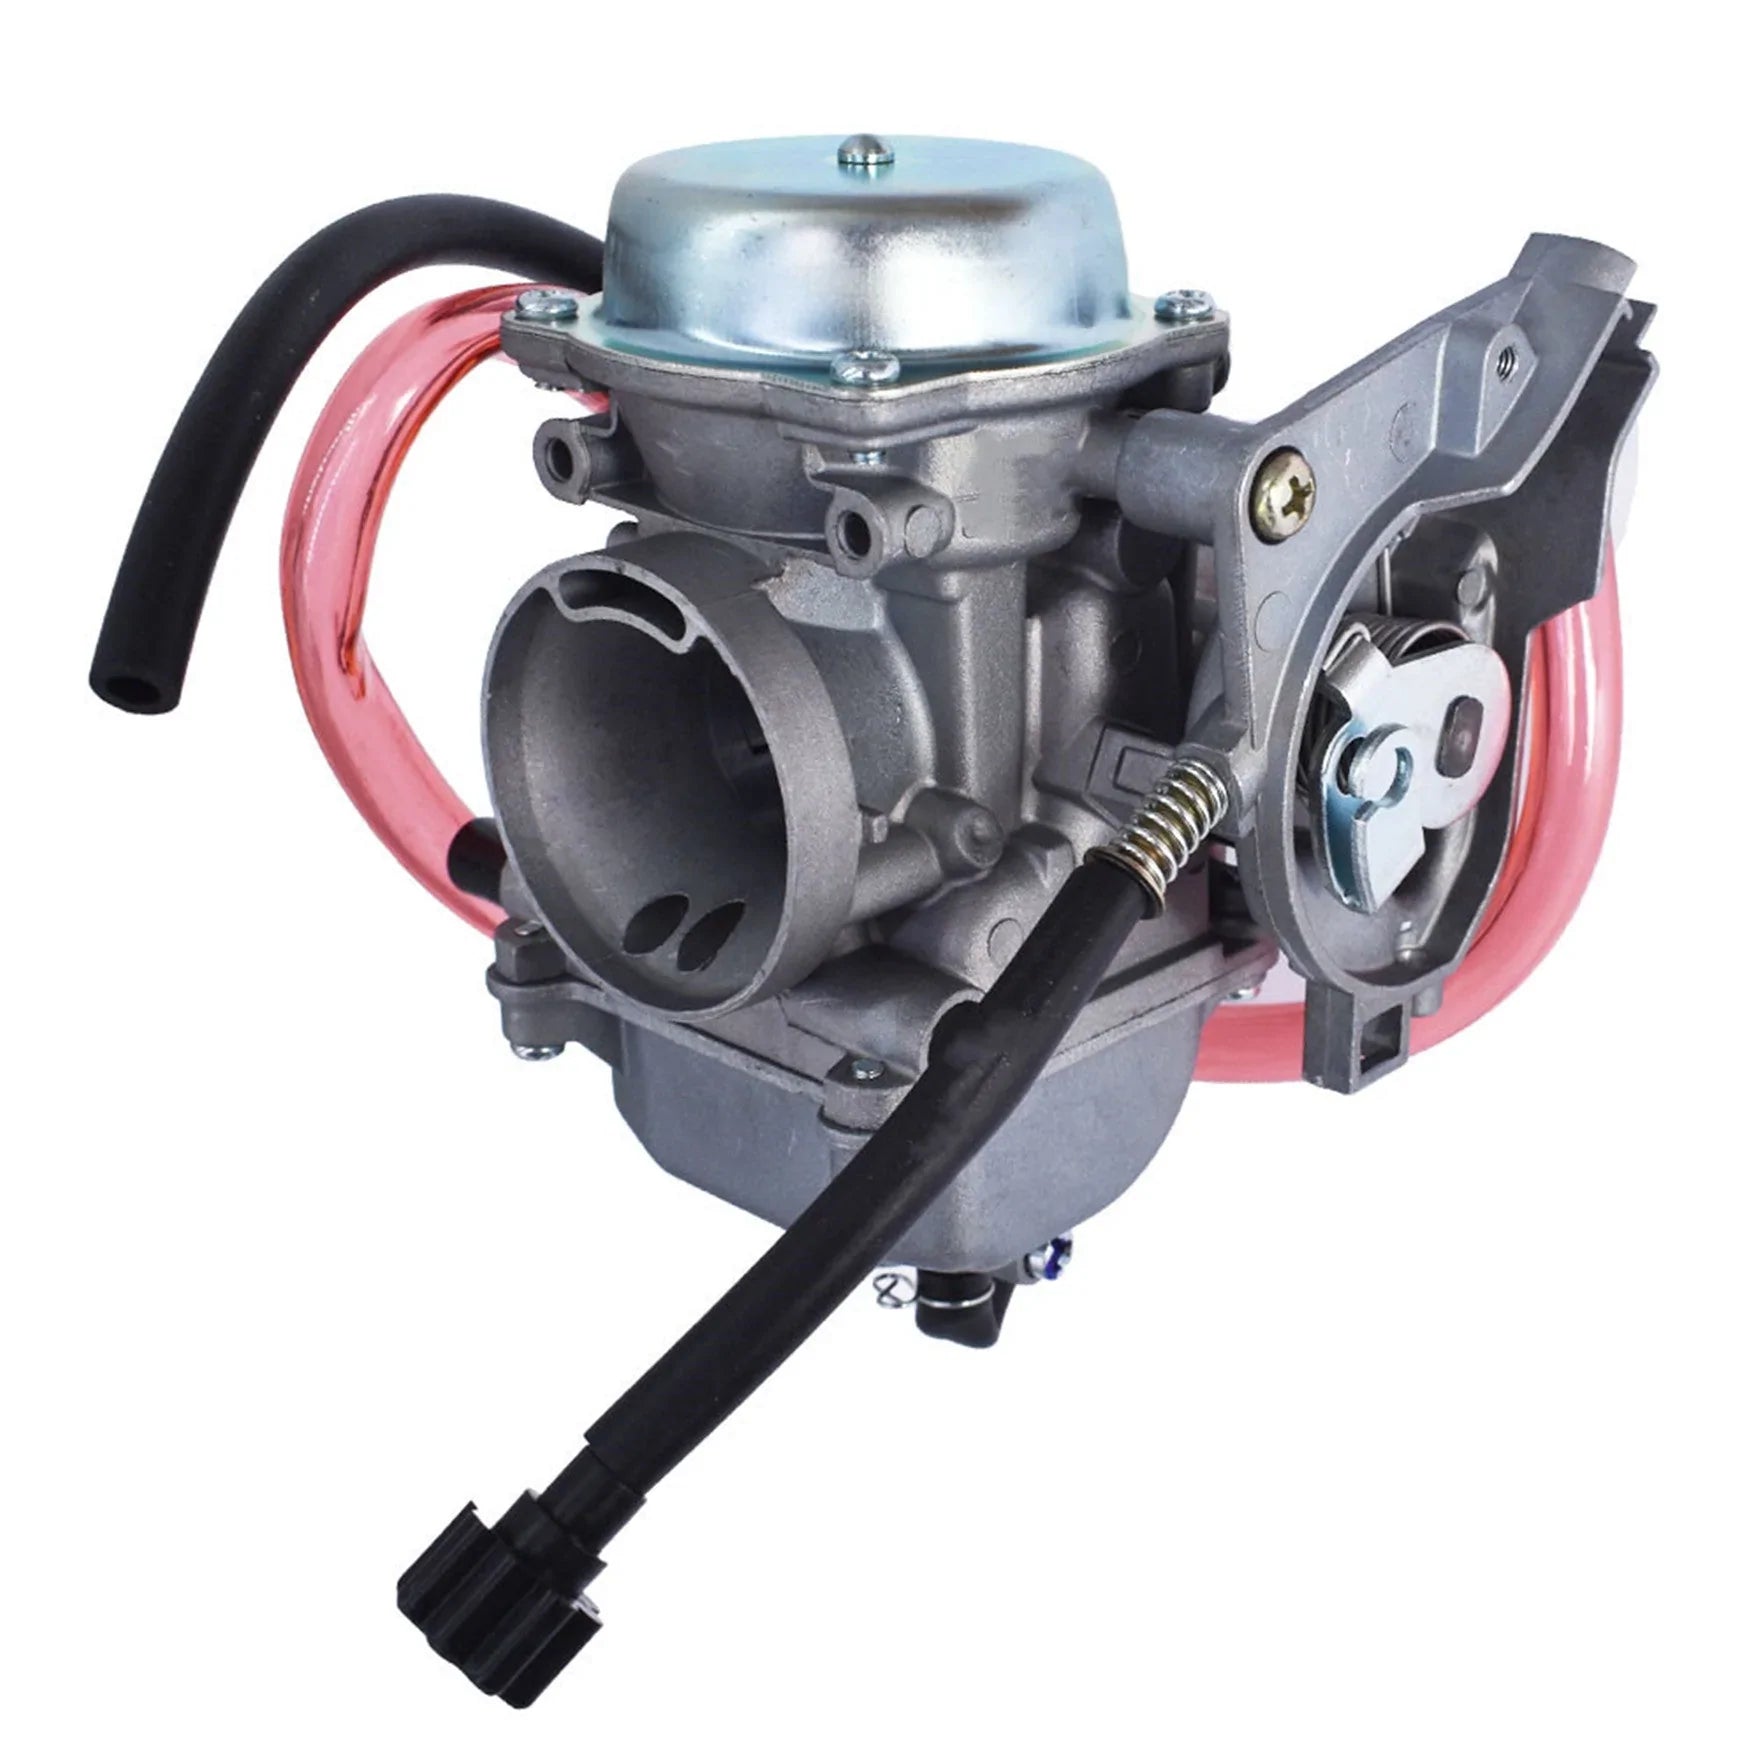 labwork Carburetor Carb Fit for Arctic Cat 2014-2016 300 Dvx Utility ATV Quad 3306-881 LAB WORK MOTO